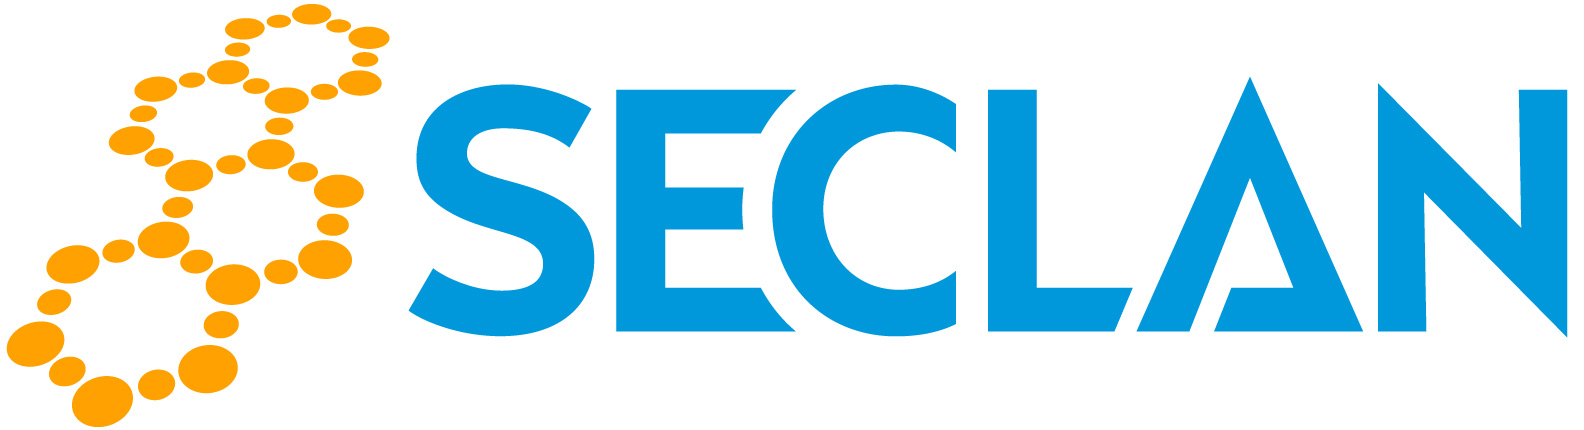 Seclan Oy:n logo